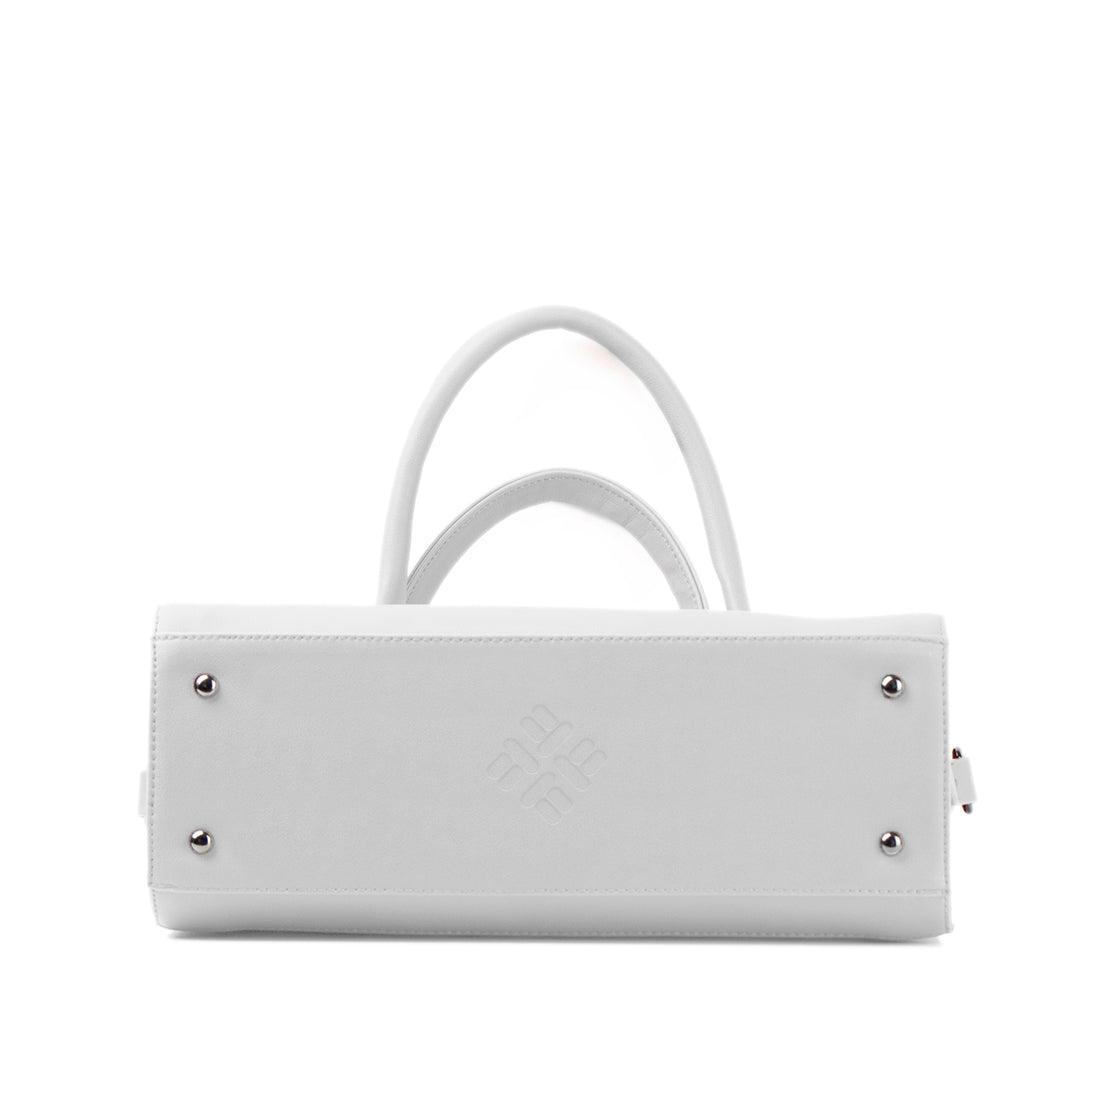 White Travel Hobo Bag Texture